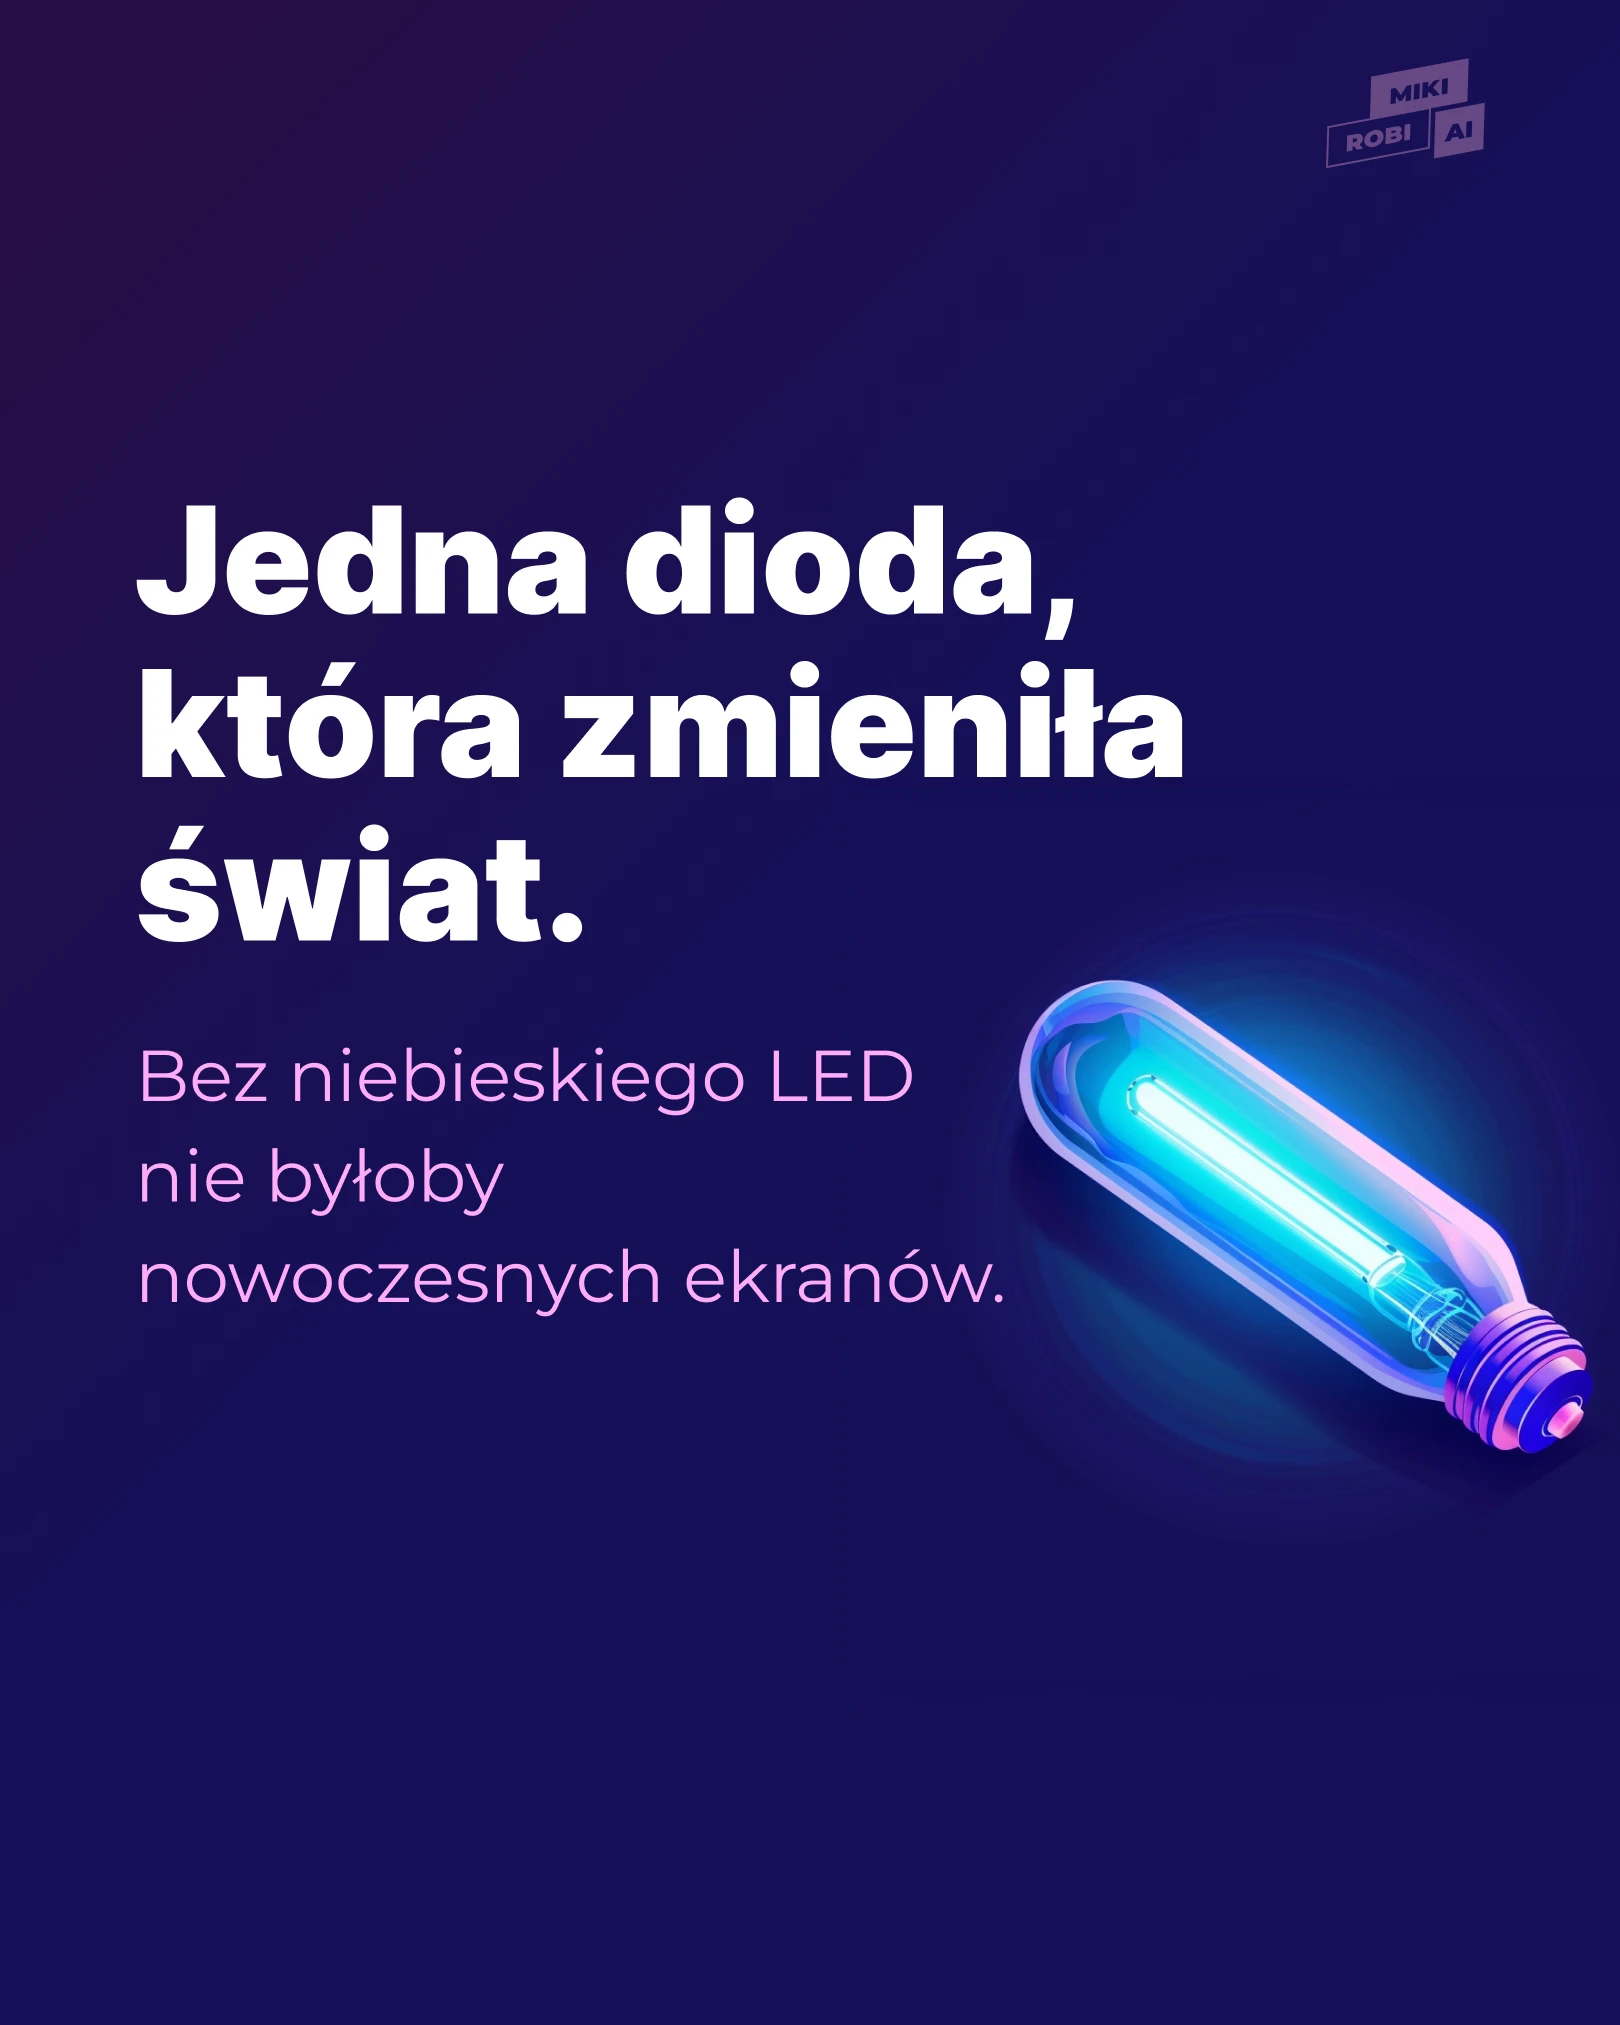 Historia niebieskiego LED-a